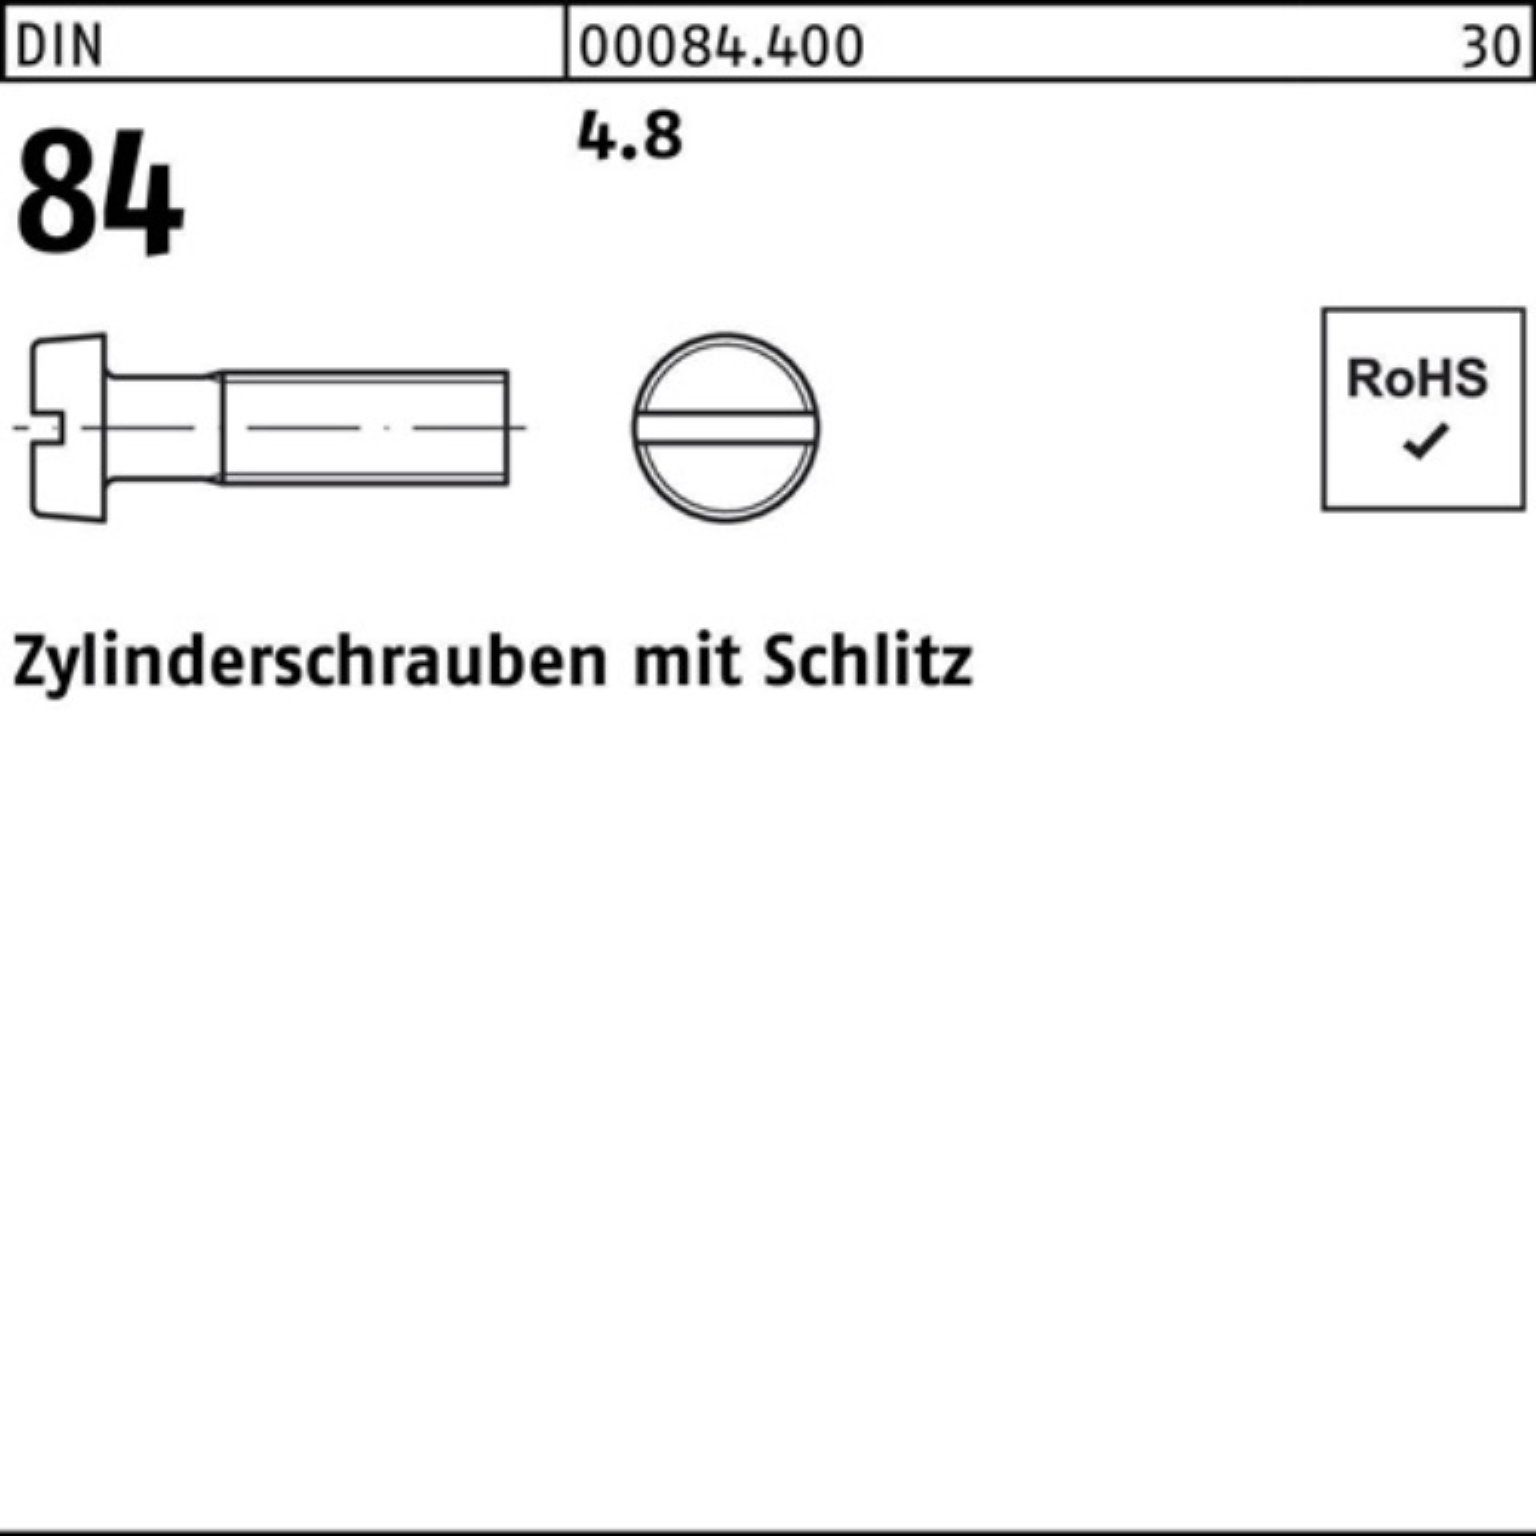 8 Pack 4.8 2000er DIN St Zylinderschraube Zylinderschraube 84/ISO Schlitz 1207 M2x Reyher 2000